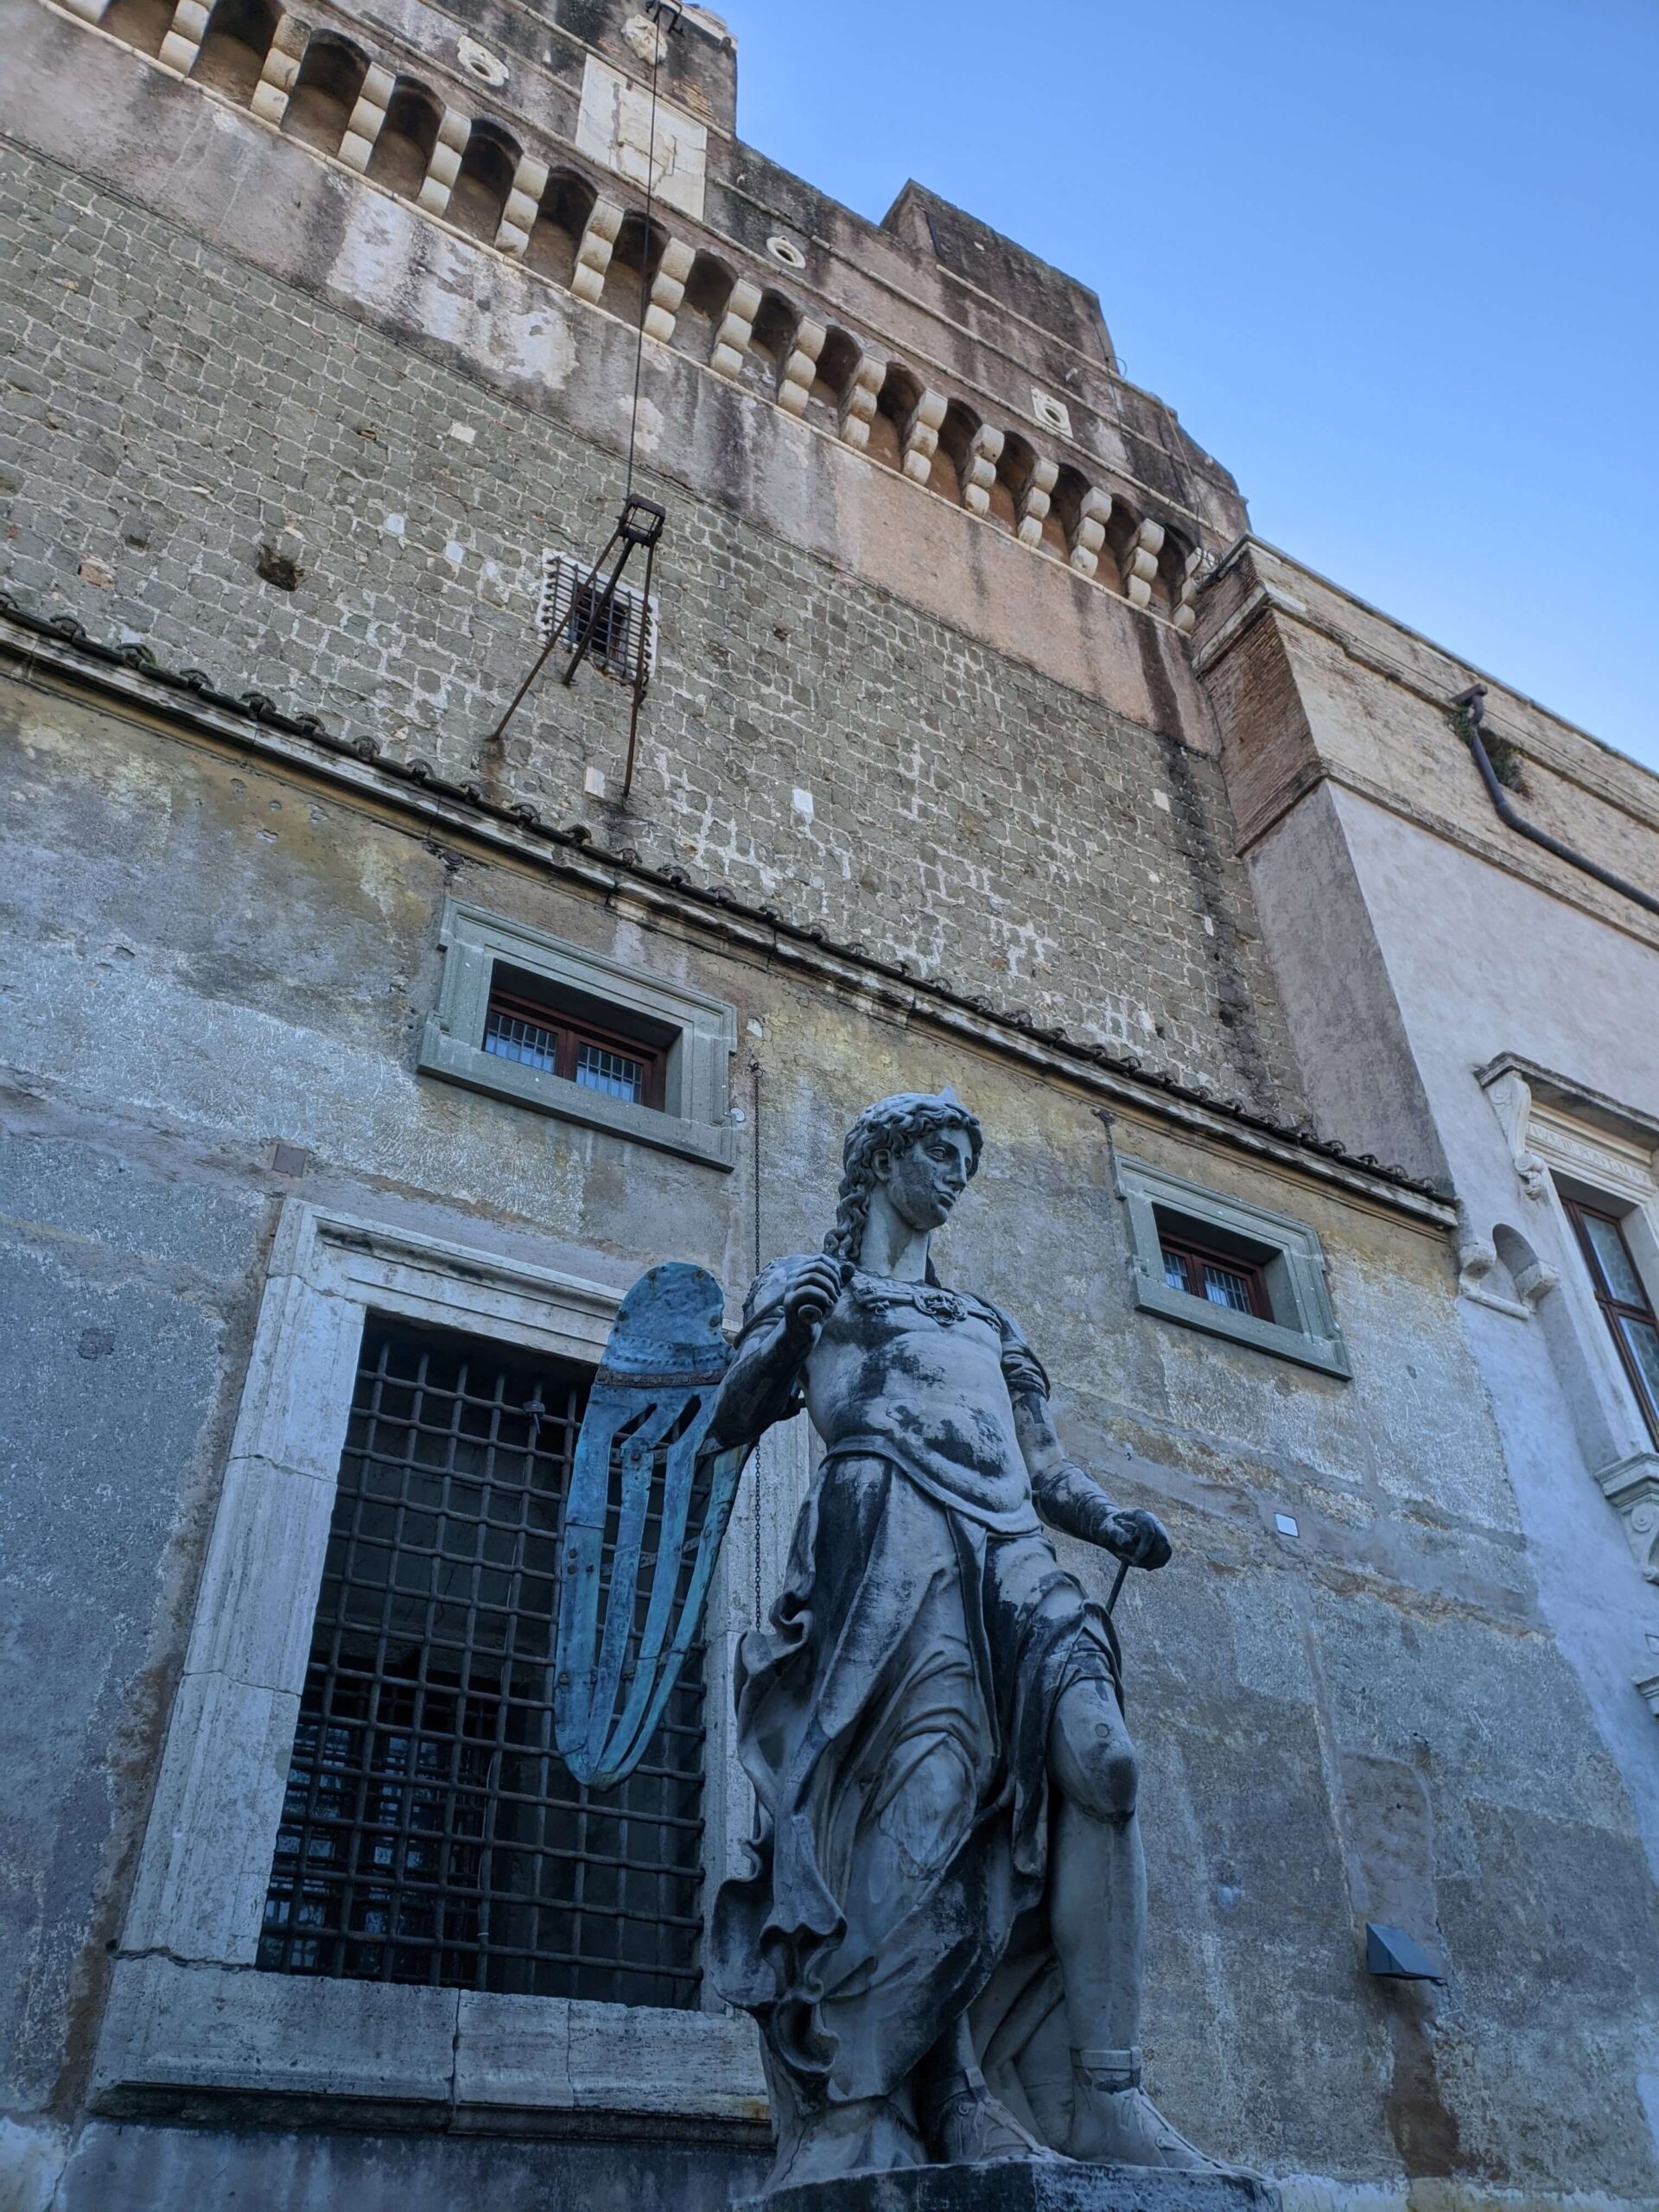 Estátua do Arcanjo Miguel com escudo e espada, no Castelo de Santo Ângelo, mostrando detalhes da arquitetura antiga ao fundo.